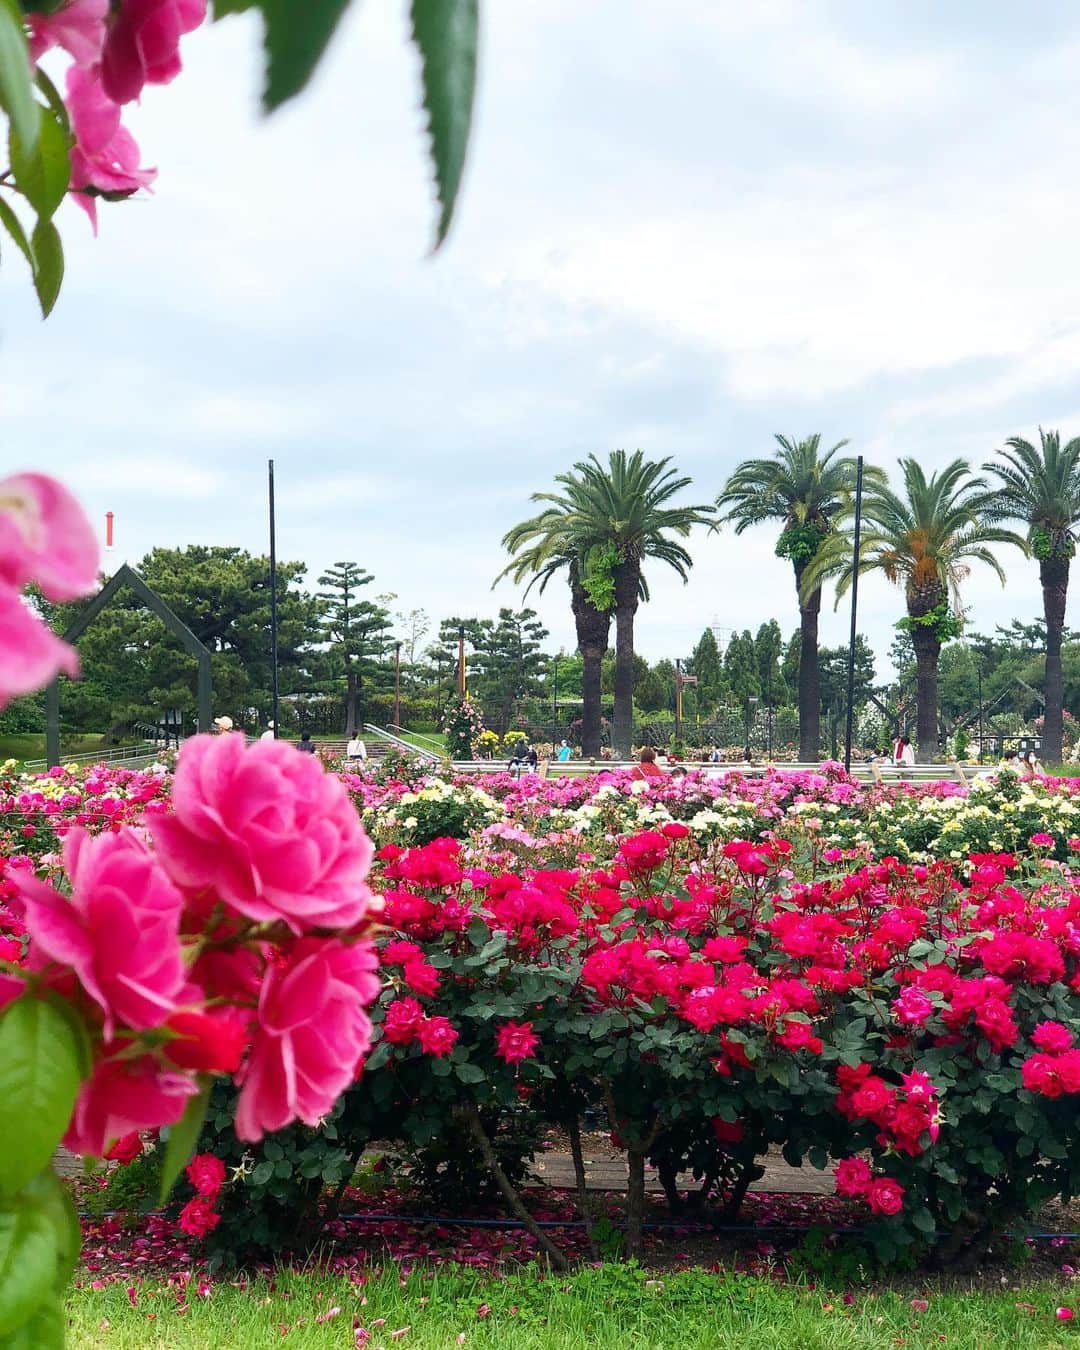 麻衣子のインスタグラム：「. . まるで海外、じゃない⁈ いえいえ、 ここは大阪の#浜寺公園 です。  この時期になると、#バラ園 がオープンされます。 たくさんの種類の#薔薇 🌹が咲き乱れていて圧巻です。 地元だから、今までずっとなんの気ナシに行っていたバラ園なんだけど、今年は少し違う印象で眺めることができました。  映画鑑賞をこよなく愛する私ですが、 今回『ローズメーカー　奇跡のバラ』（仏🇫🇷）を観ました。 日本公開は5/28松竹系列にて。  これから上映するものなので、 ネタバレはしないんだけど、１時間半の短尺にもかかわらず、上手くまとめ上げられた映画だなと感じました。 観たあとは、なんとも言えず幸せな気持ちに。バラを通じて、人間関係が深く構築されていく様は、最後涙を誘います。 #ほぼネタバレ😂  バラを種から育てたり、商品開発していくことは、とても手がかかり、根気が必要で、すごく大変なんだな、と。 新種を開発できたら特許が取れ、一つの農園を経営できるほどらしい。 市場で高いのも納得です。  薔薇の価値は、 ✔︎病気への耐性（健康度） ✔︎花びら（花としての集合体）の具合 ✔︎色と香り これが揃わないとあかんらしい。  私が魅入ったのは、エブ（主人公）のお部屋の家具や絵画。そして、その雰囲気。本当に美しい。 バラの美しさはもちろん、そんなフランスらしい雰囲気に触れられる映画です。  そして、浜寺公園のバラ園にもぜひお越しください。BBQは今は禁止となっていますが、とても広いのでいろんな見所や遊べるエリアがあります。ランニングにも最適です！ #PRじゃないよ  #ローズメーカー #奇跡の薔薇  #こっちはPRだよ  松竹さん、 試写のご招待ありがとうございました。  #instagram#instagramjapanflower_daily#instaflower#flowerpic#flowerarrangement#vscoflowers#lifestyle#フラワーアレンジメント#花のある暮らし#花#暮らし#フラワー#floralphotograph #floralphoto #florals」